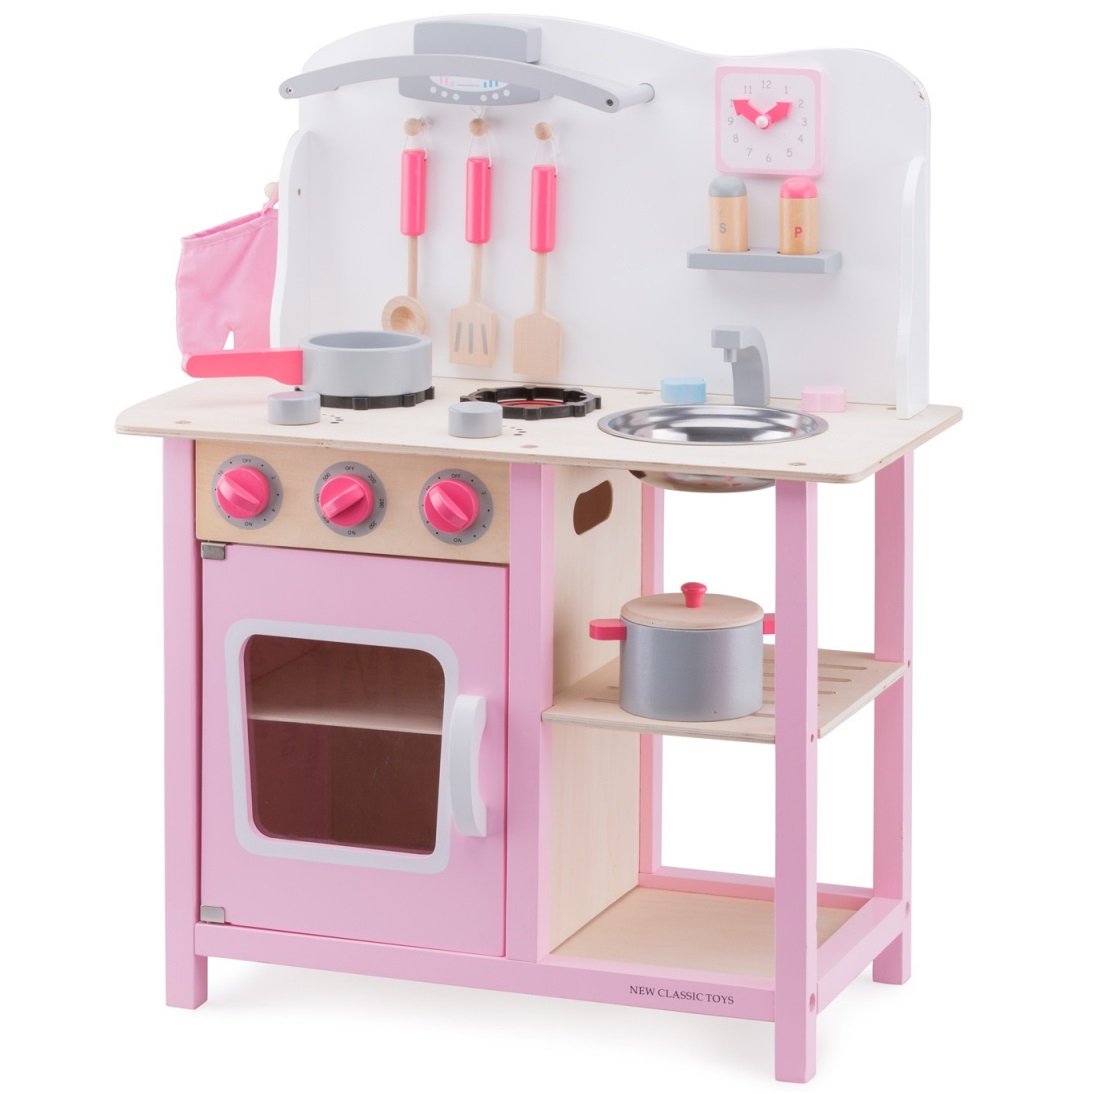 Іграшкова кухня New Classic Toys Bon Appetit, рожевий (11054) - фото 1